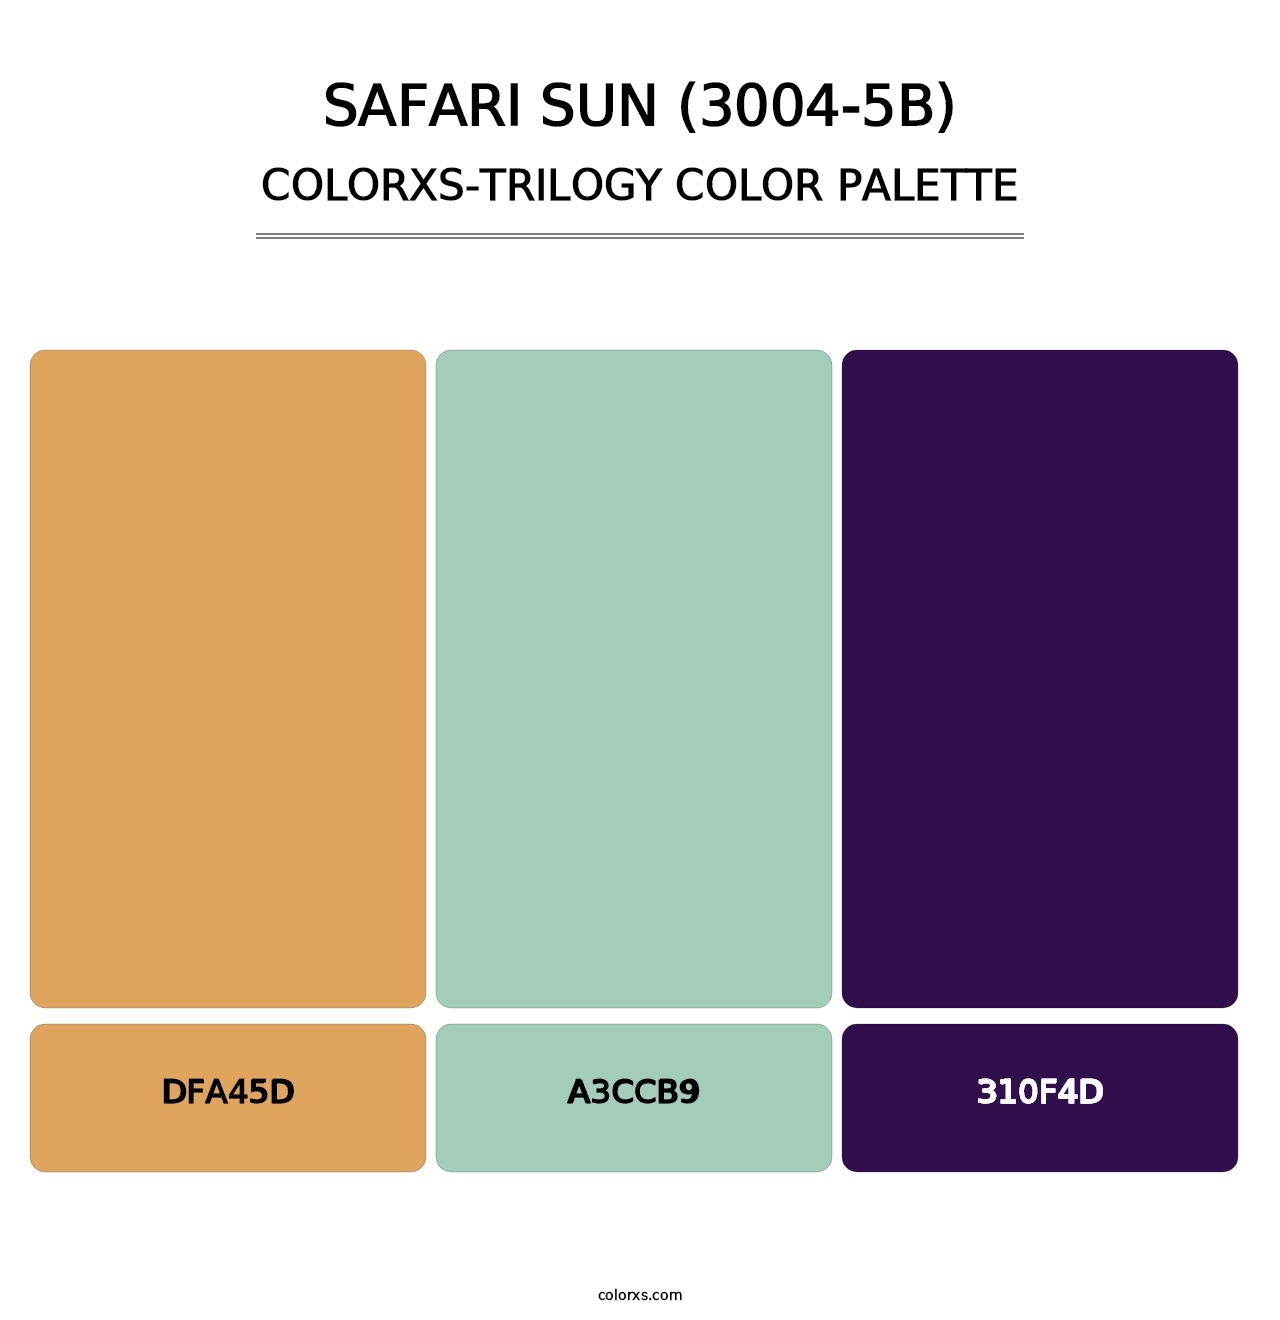 Safari Sun (3004-5B) - Colorxs Trilogy Palette